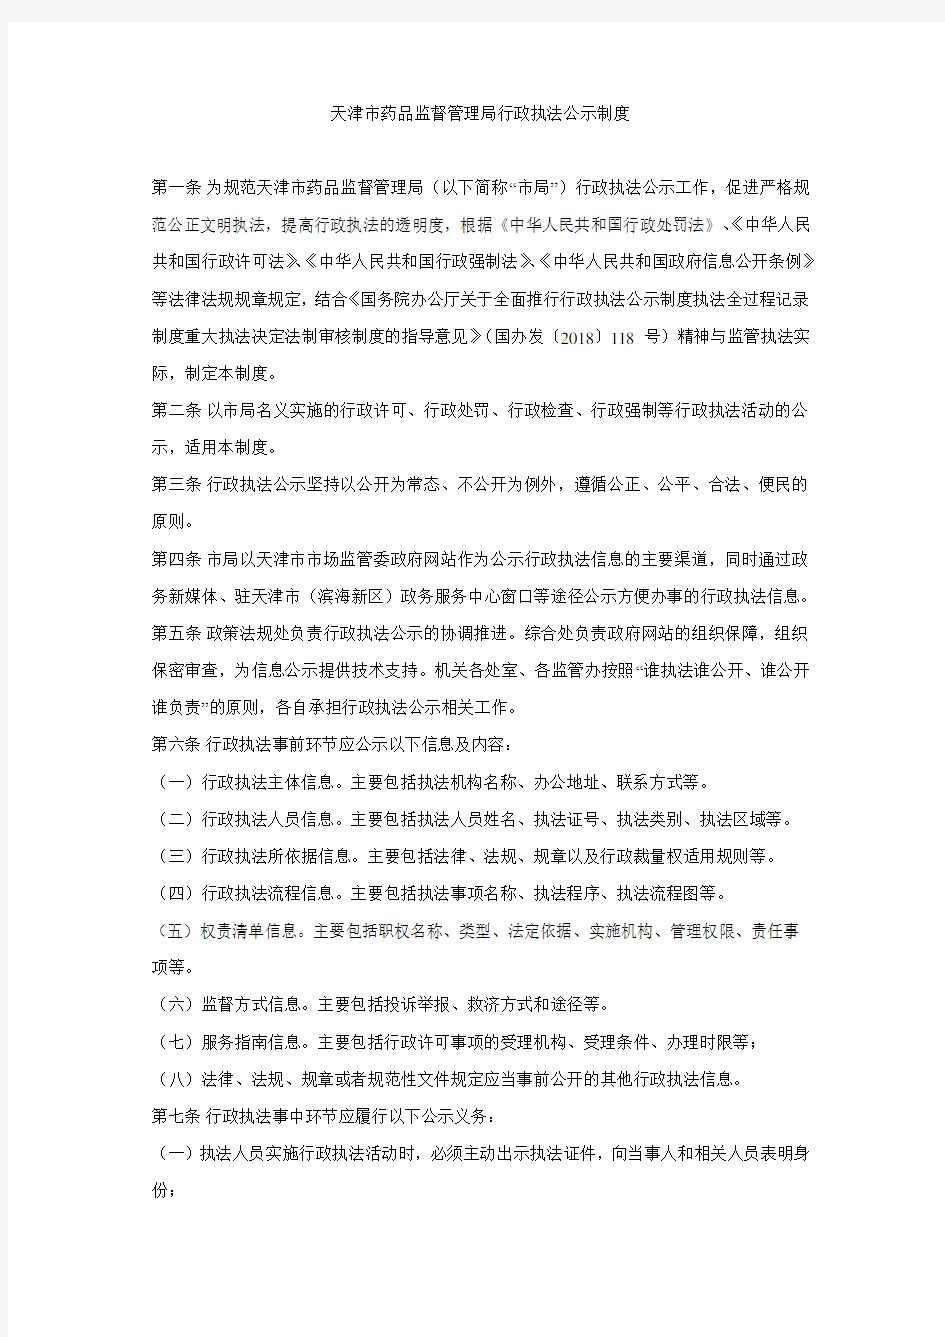 天津市药品监督管理局行政执法公示制度